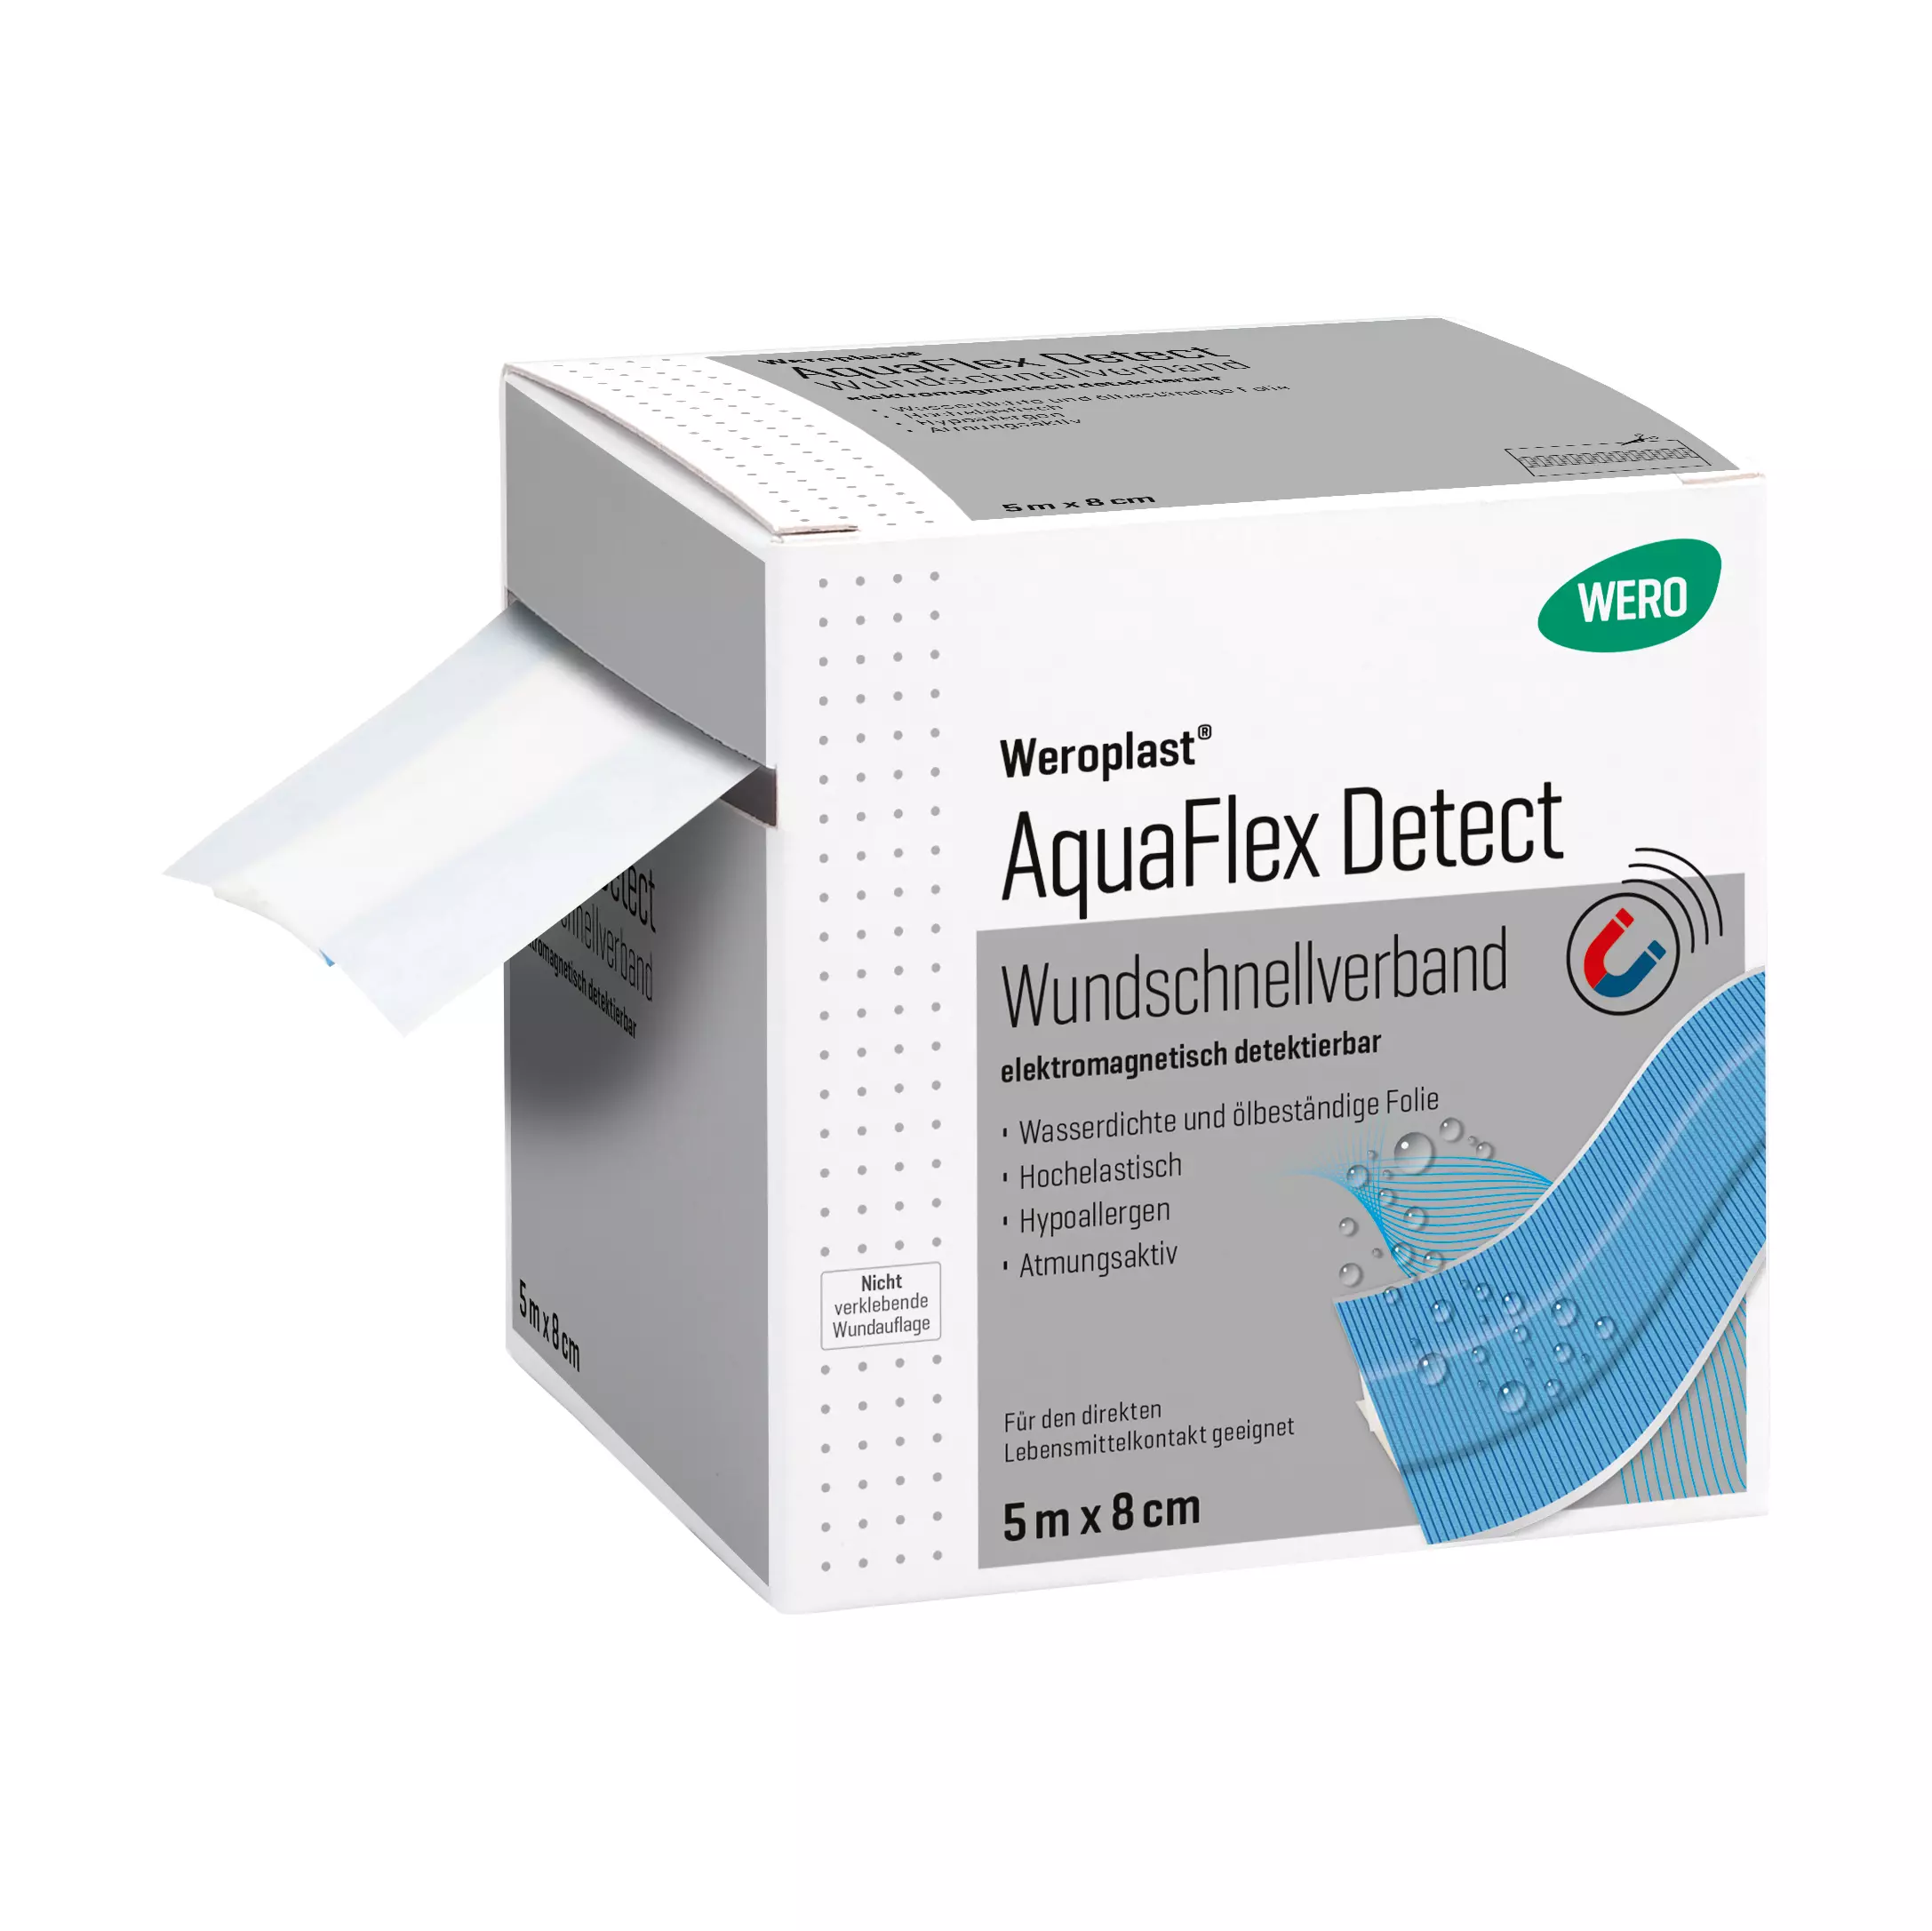 Weroplast® AquaFlex Detect Wundschnellverband - 8 cm, 5 m